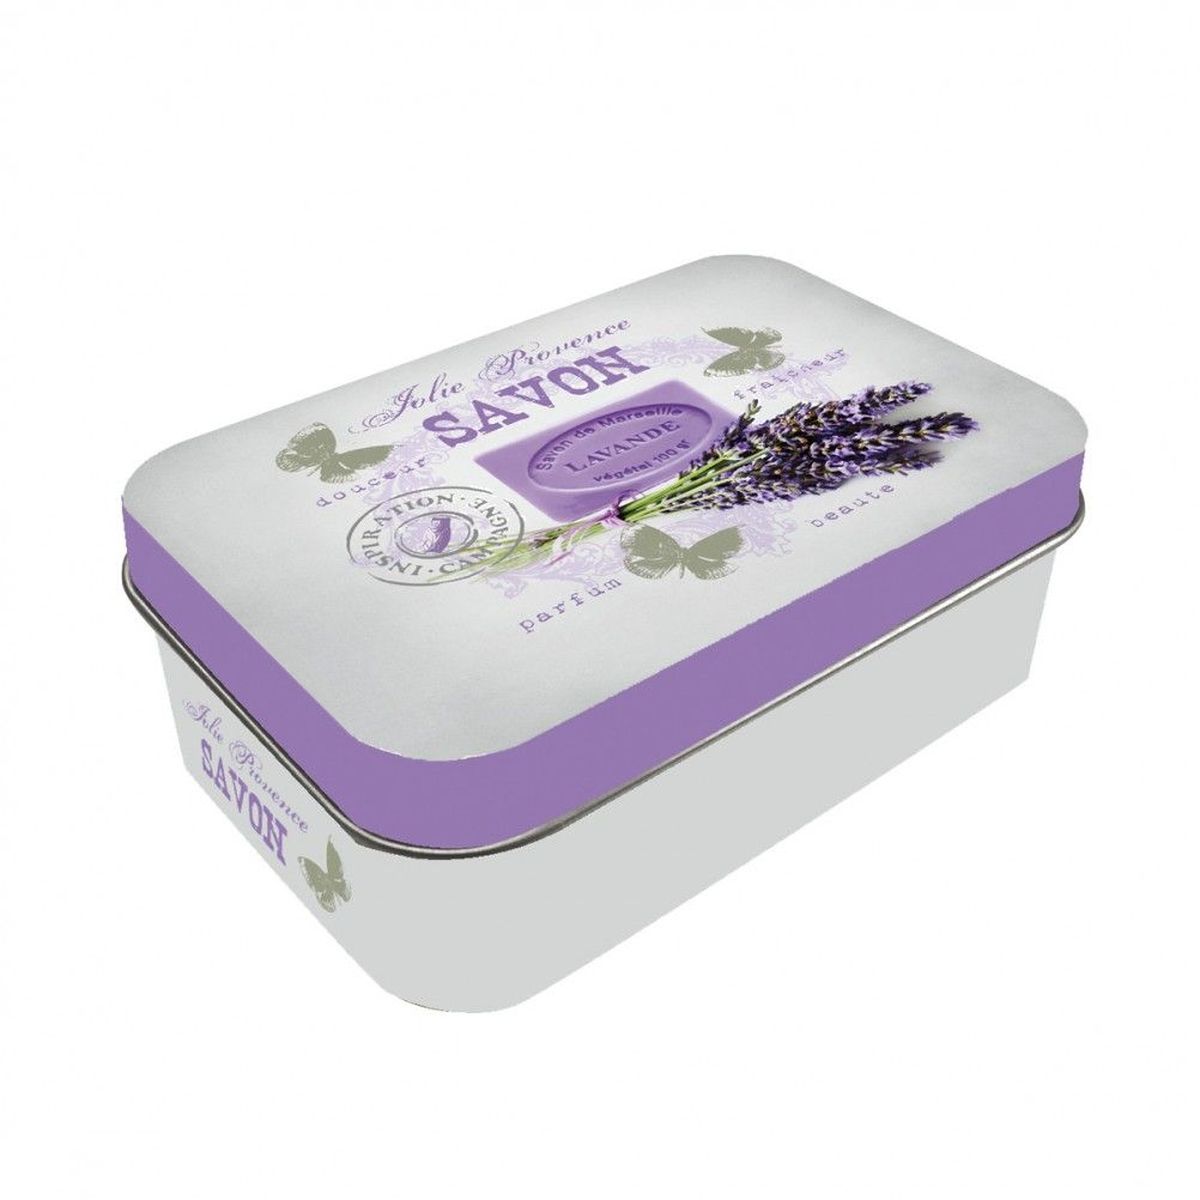 Provence soap box - Marseille soap 10 x 6.5 x 3.5 cm